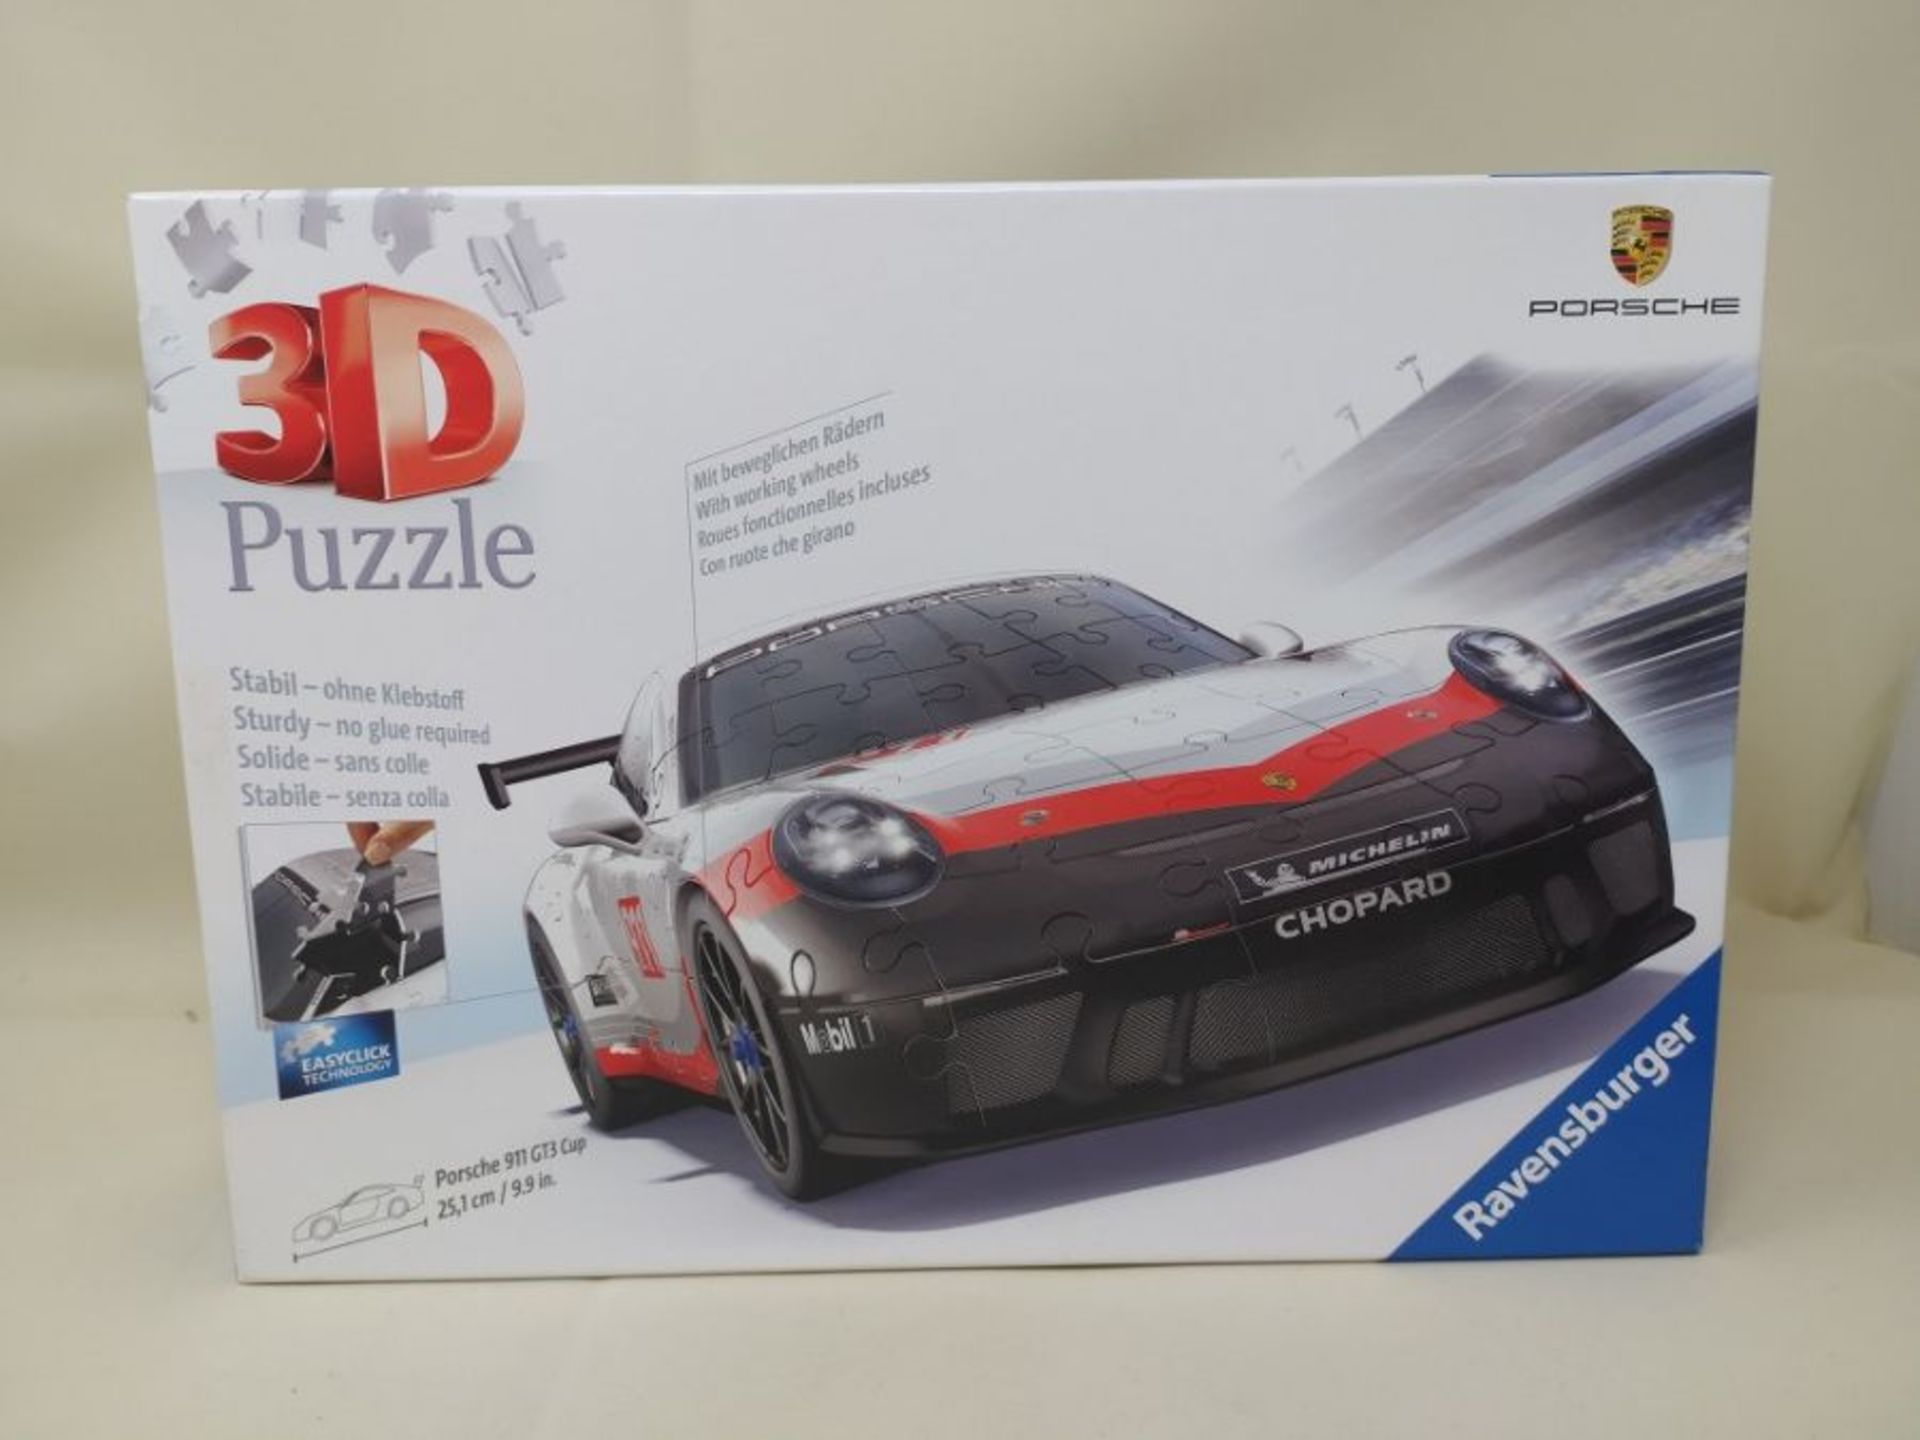 R�a�v�e�n�s�b�u�r�g�e�r� �P�o�r�s�c�h�e� �G�T�3� �C�u�p� �3�D� �J�i�g�s�a�w� �P�u�z�z�l�e� �f�o�r� � - Image 2 of 3